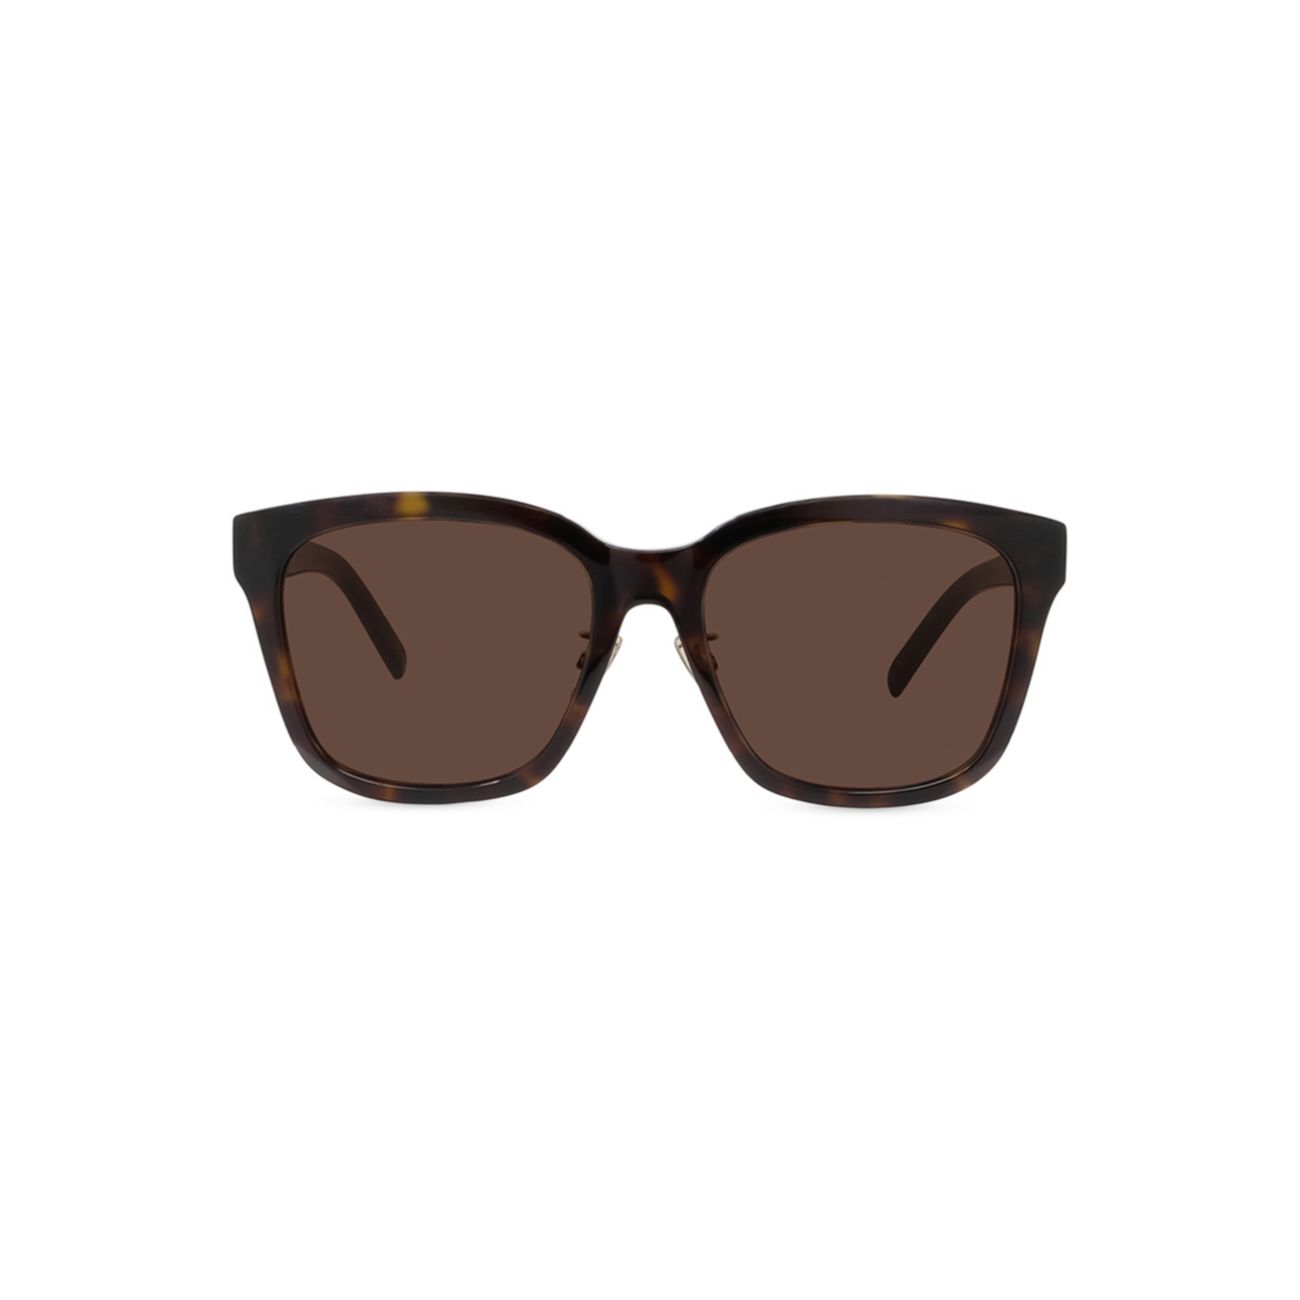 Квадратные солнцезащитные очки 55 мм Givenchy